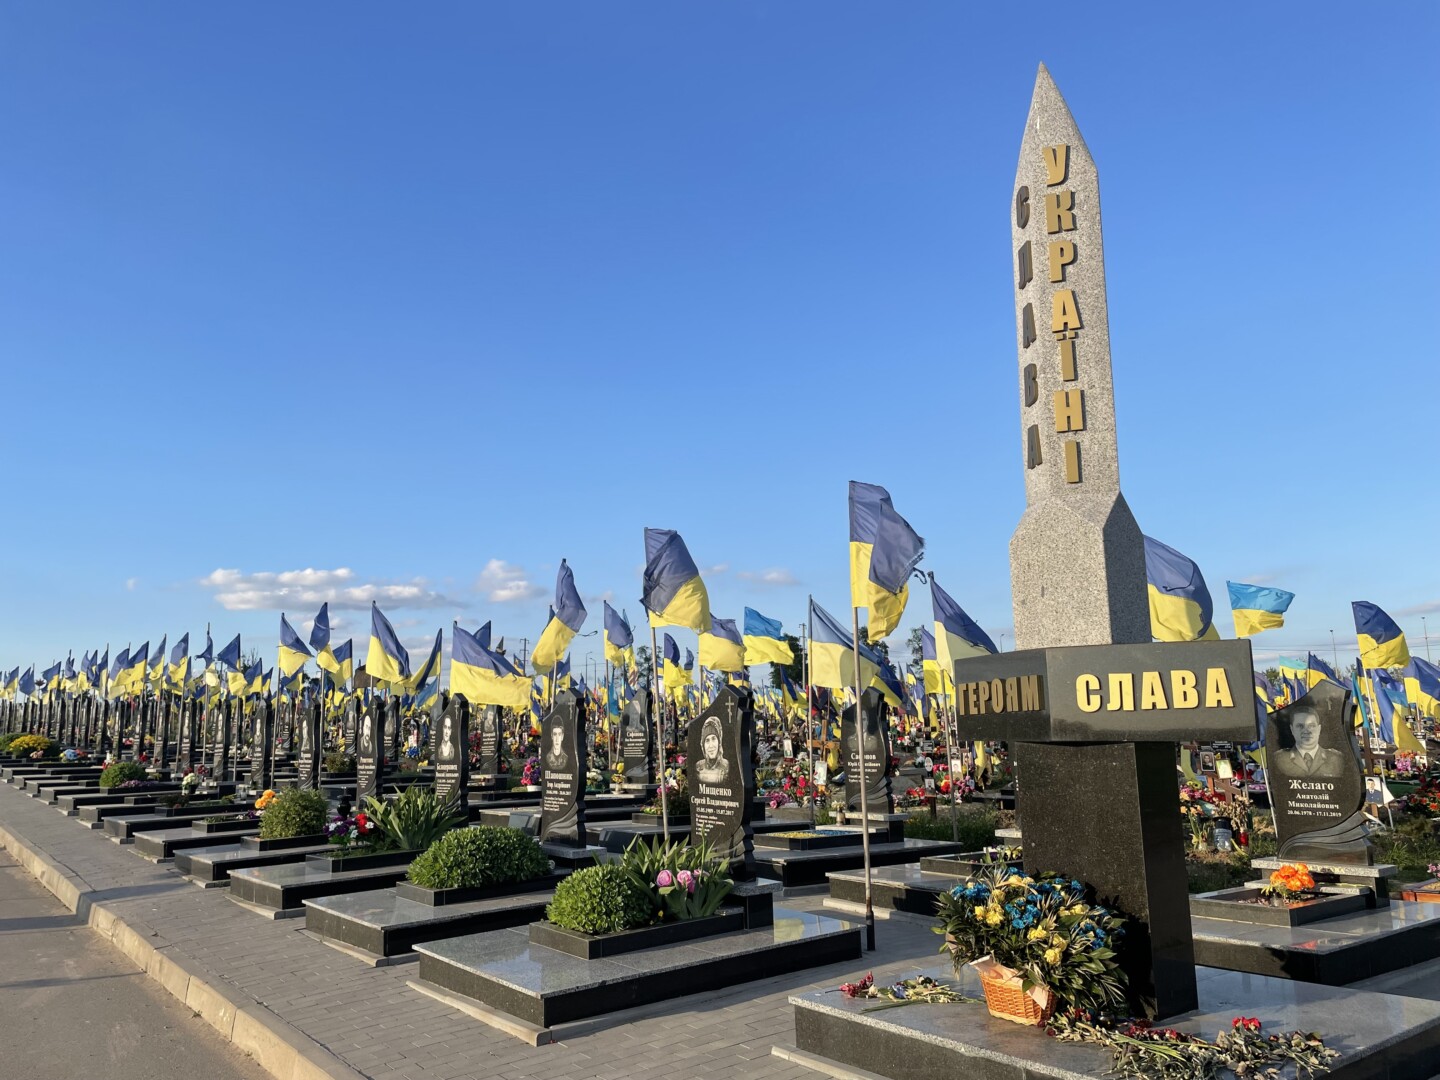 Ukrainos kapinėse ilsisi tūkstančiai dėl tėvynės laisvės gyvybę paaukojusių karių. E. BUTRIMO nuotr.